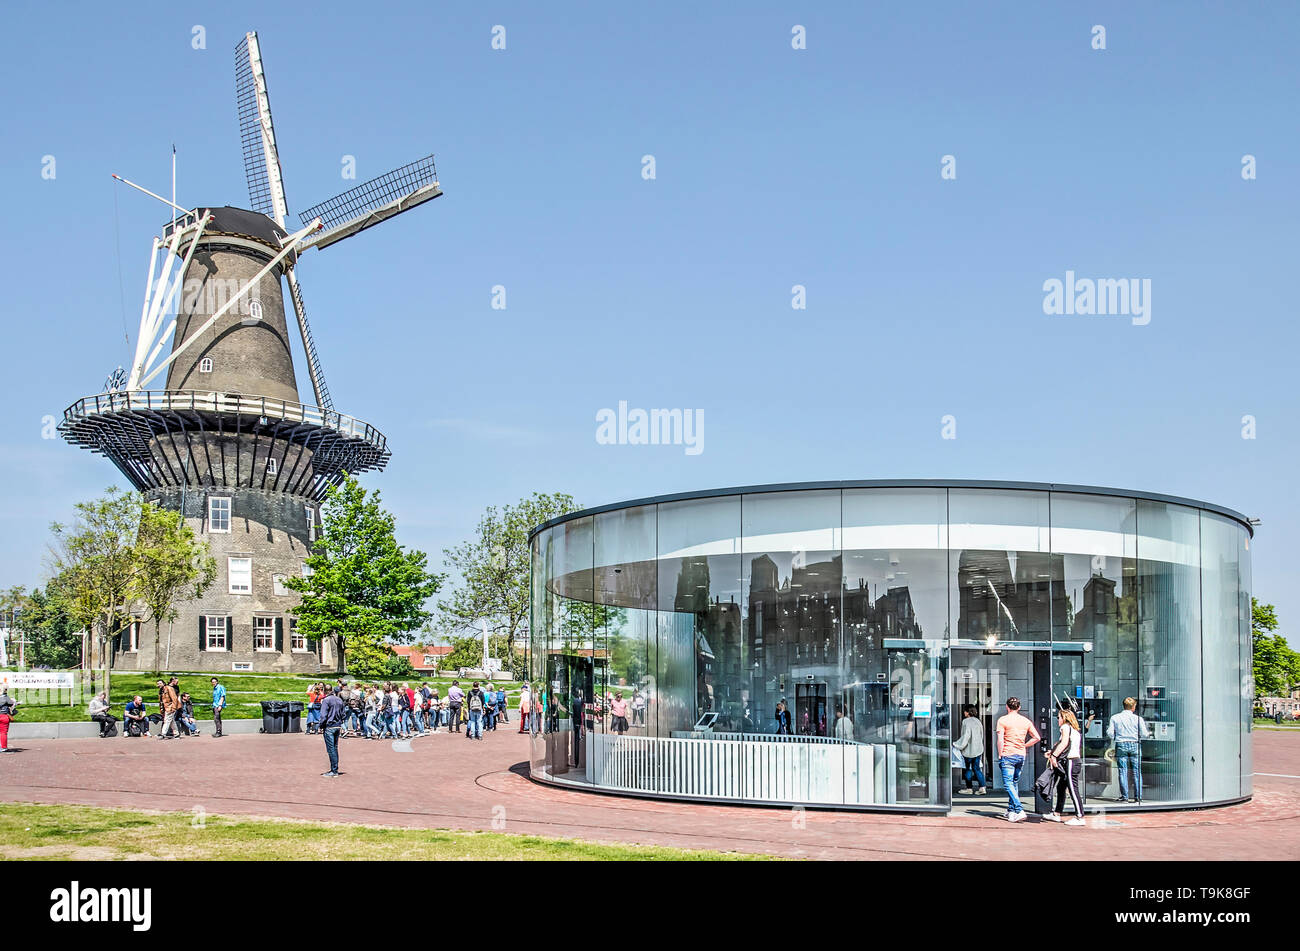 Leiden, Pays-Bas, le 18 mai 2019 : moulin à vent traditionnel De Valk et l'entrée en verre circulaire moderne pour le garage de stationnement en vertu de l'Lammermarkt squ Banque D'Images